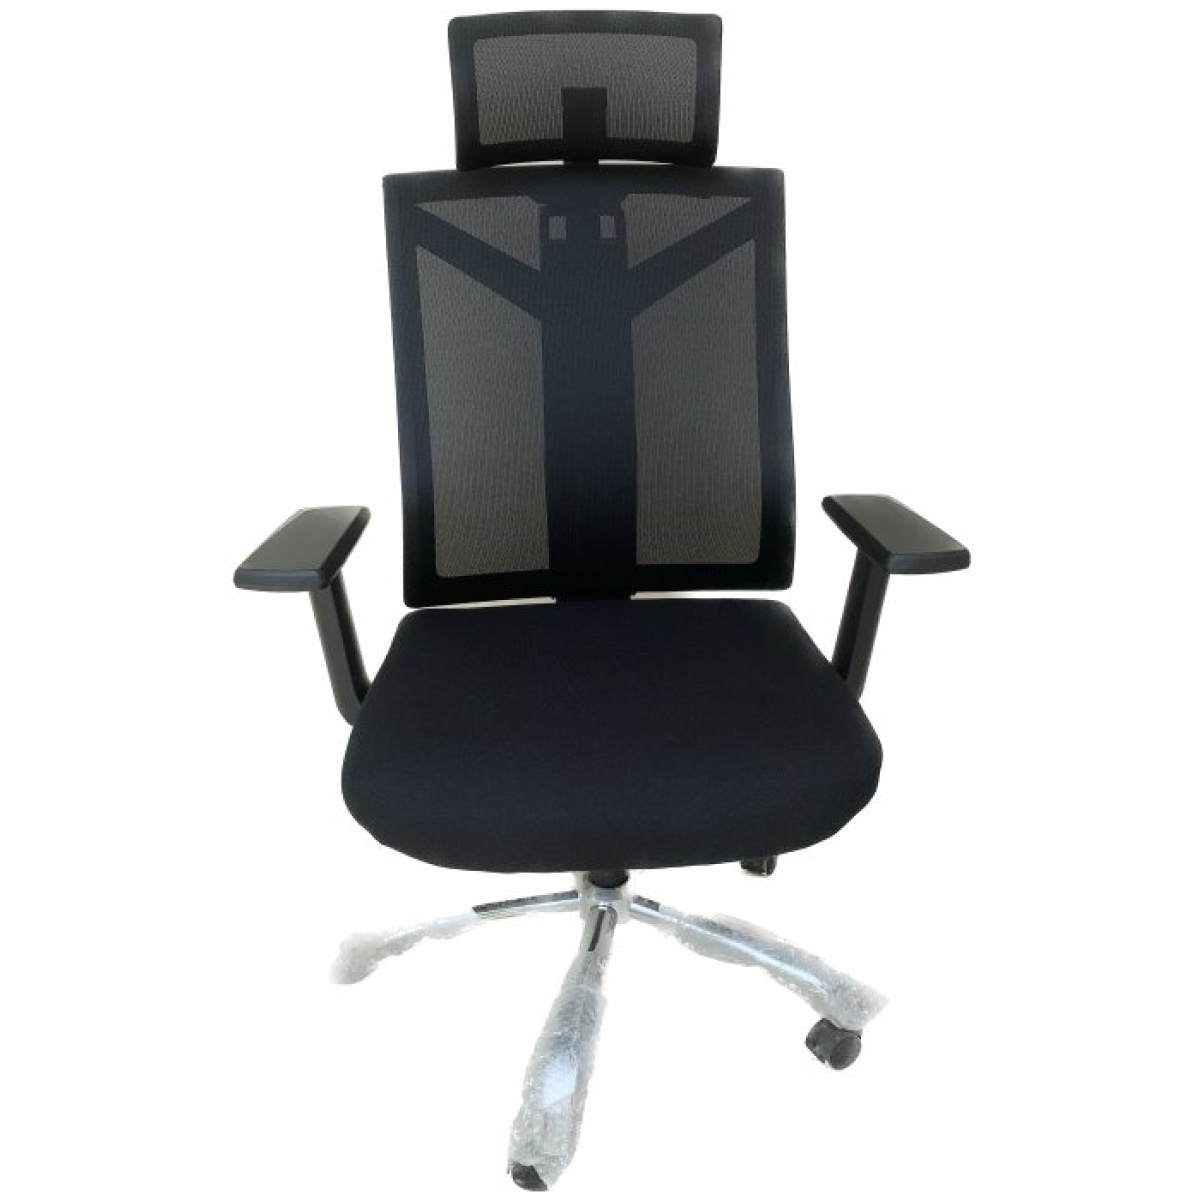 Office Chair (BP852)